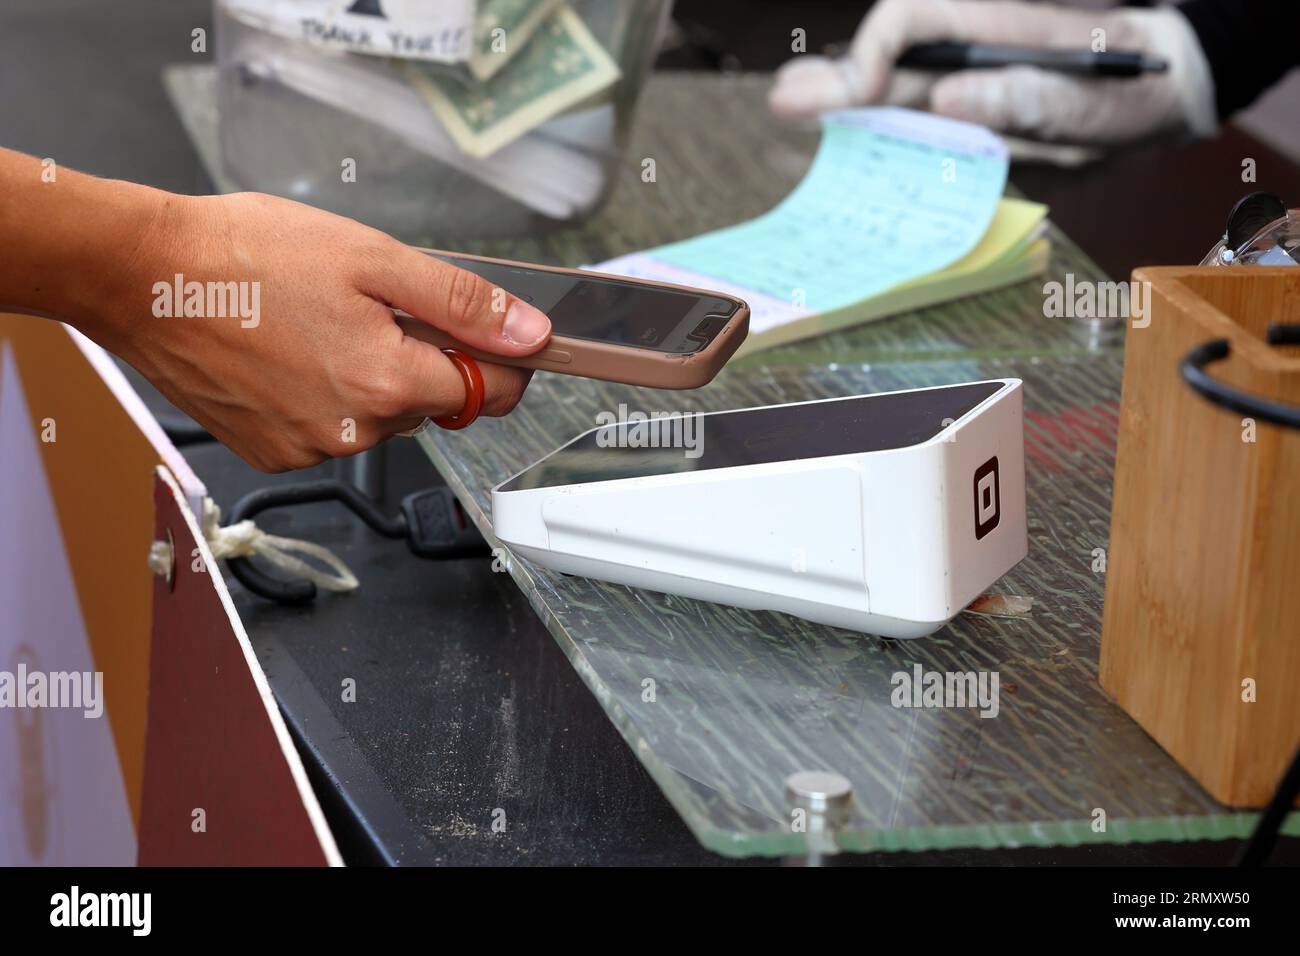 Una persona tiene uno smartphone su un dispositivo wireless Square Terminal Point of Sales per effettuare transazioni di pagamento mobile NFC o di pagamento digitale senza contatto. Foto Stock